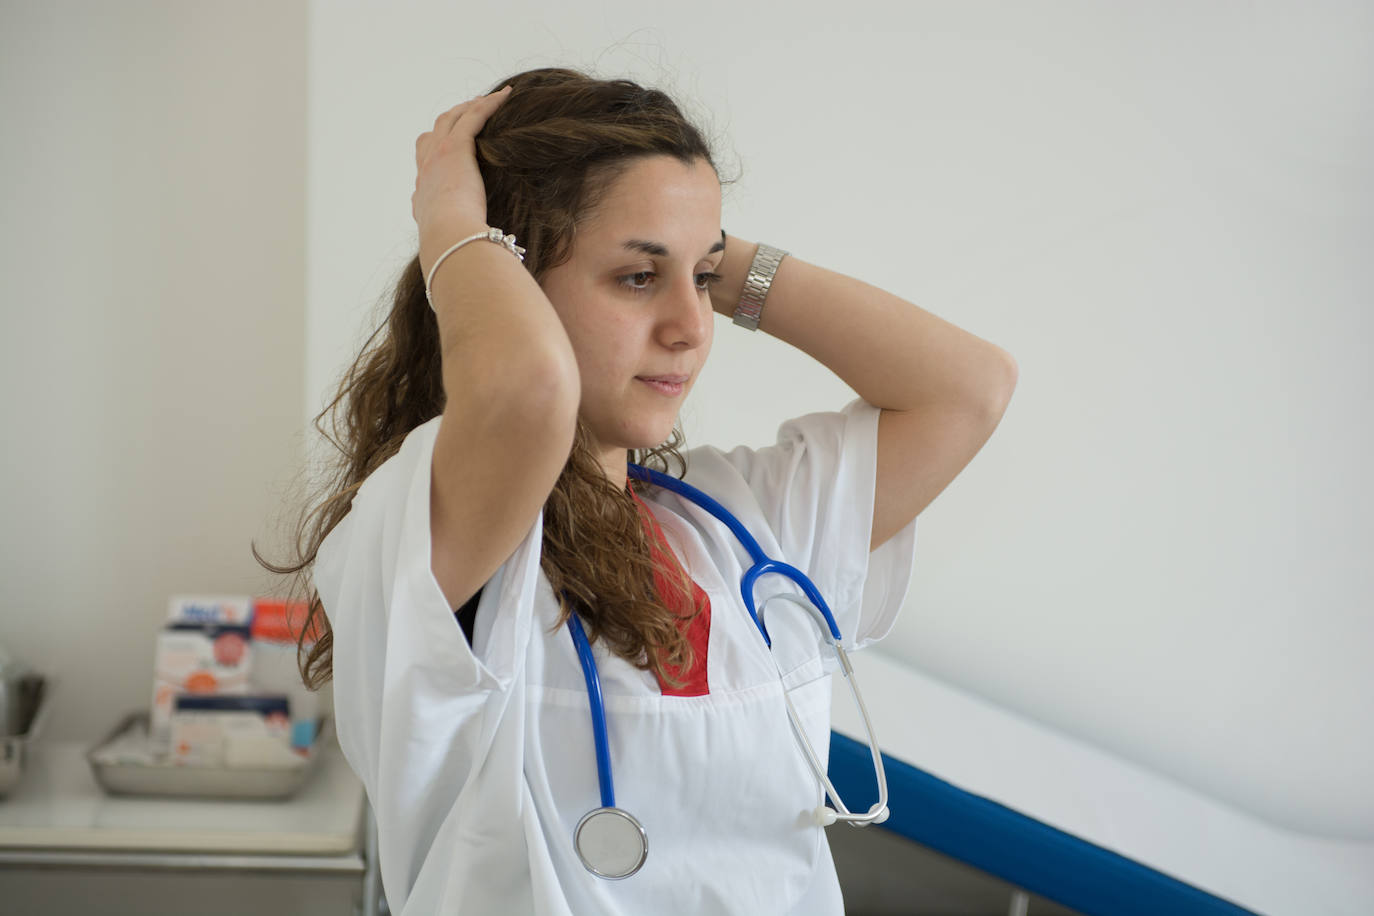 Nueve de cada diez enfermeras de Canarias sufre estereotipos sexistas